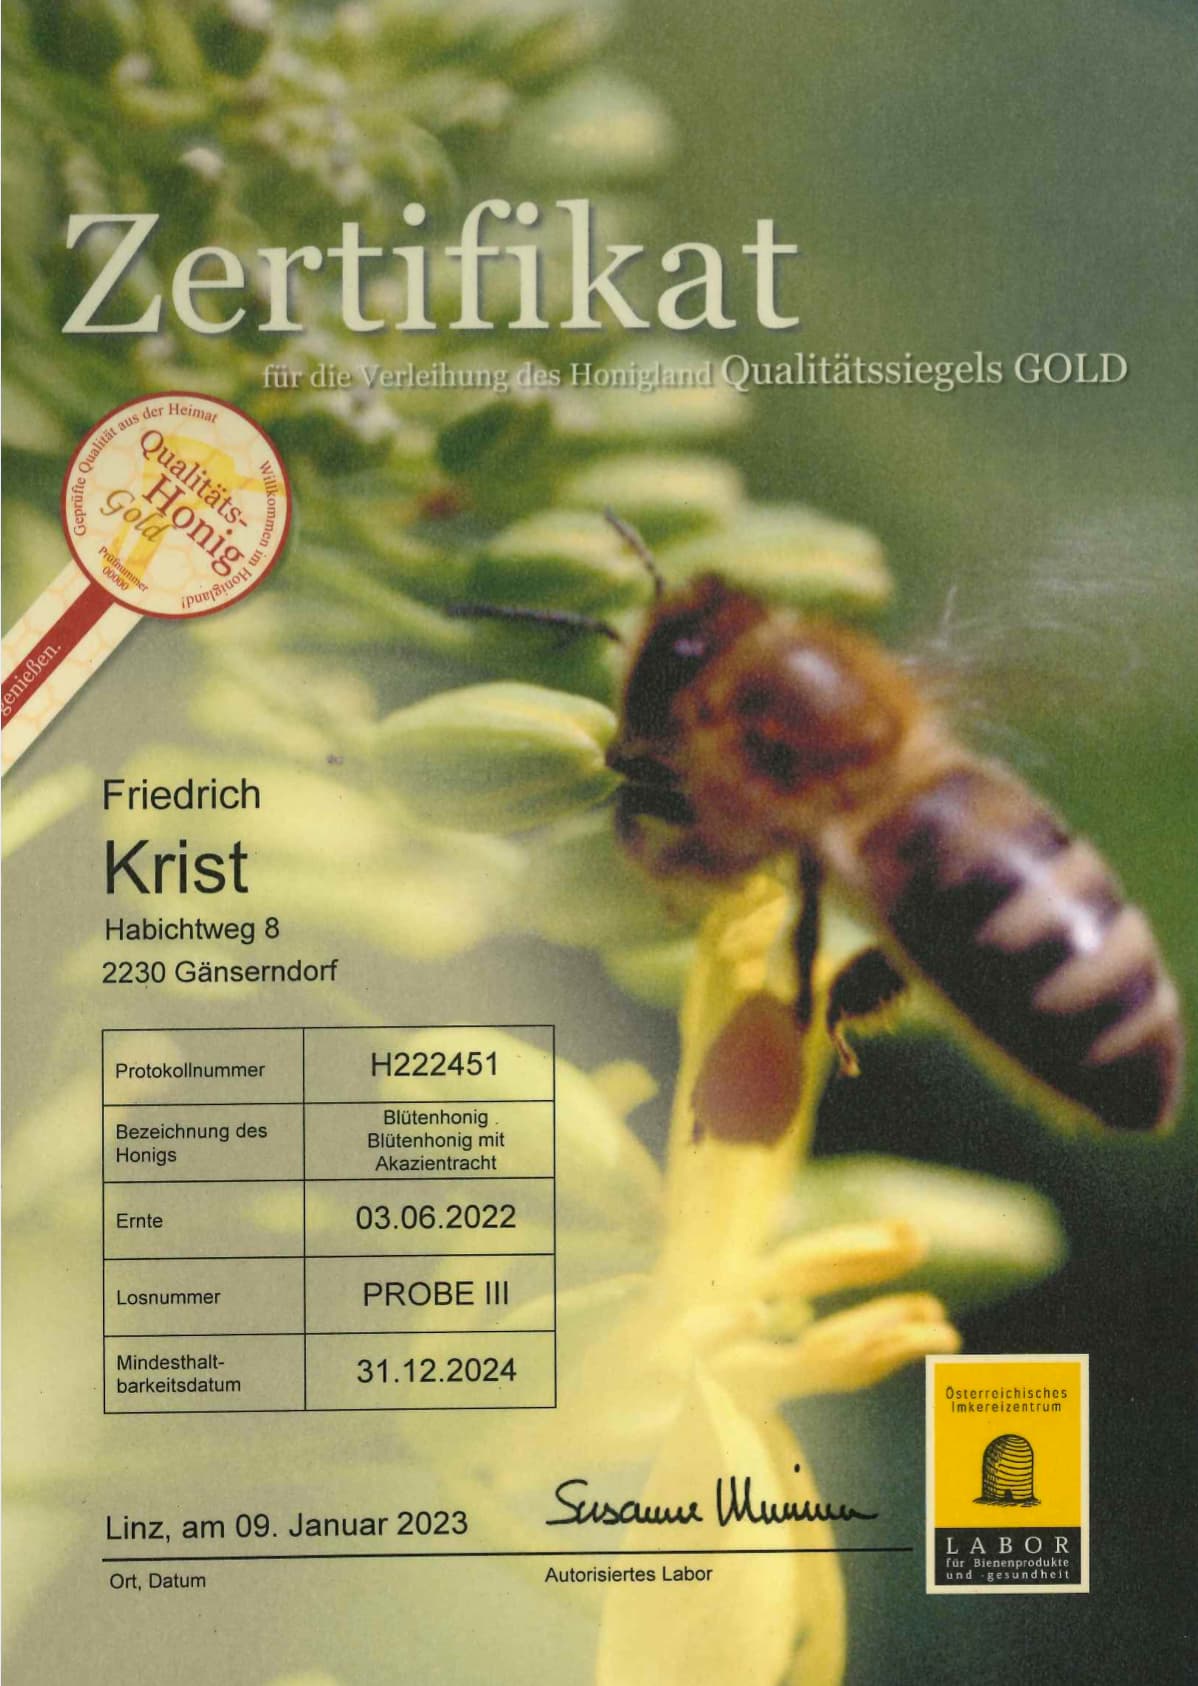 Zertifikat Qualitäts-Honig Gold Blütenhonig mit Akazientracht